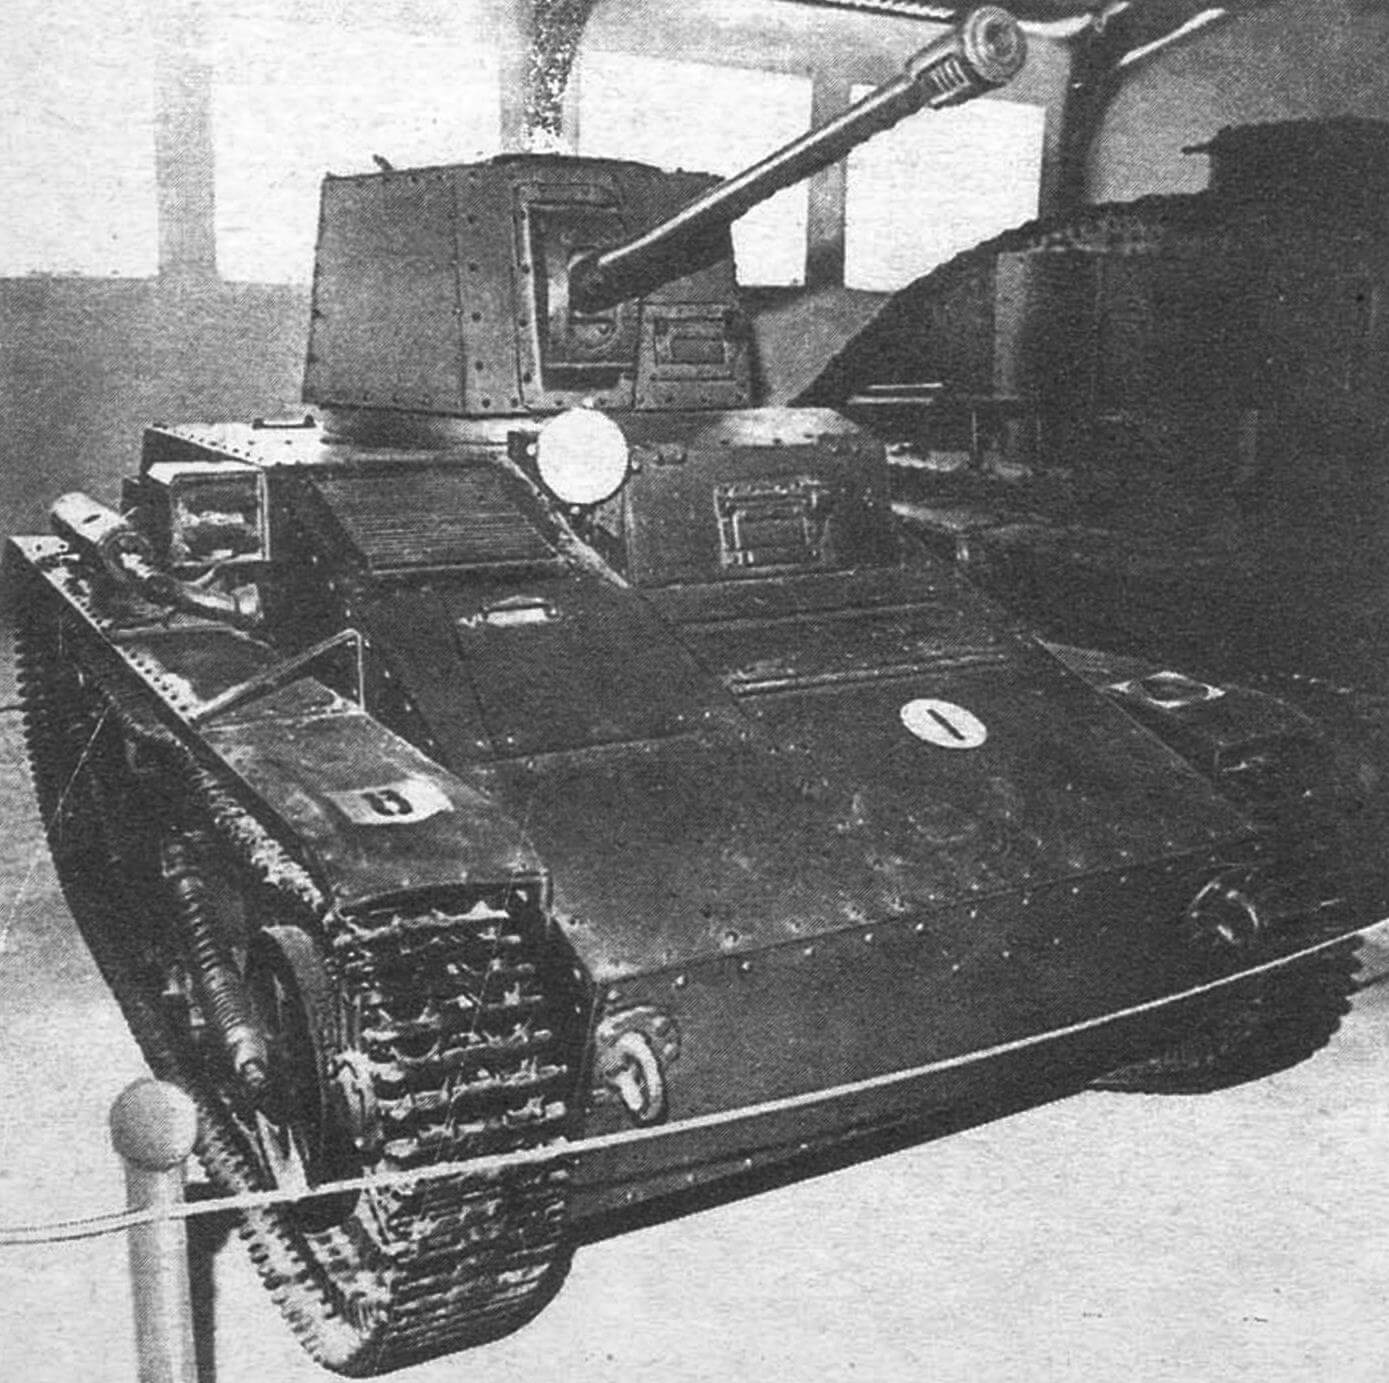 Легкий танк английской фирмы «Виккерс-Армстронг». Единственная машина этого типа, вооруженная 2-фунтовой (42-мм) пушкой в опытной башне. Состоял на вооружении армии Латвии. Оттуда, по-видимому, и попал в 1940 году в Кубинку.